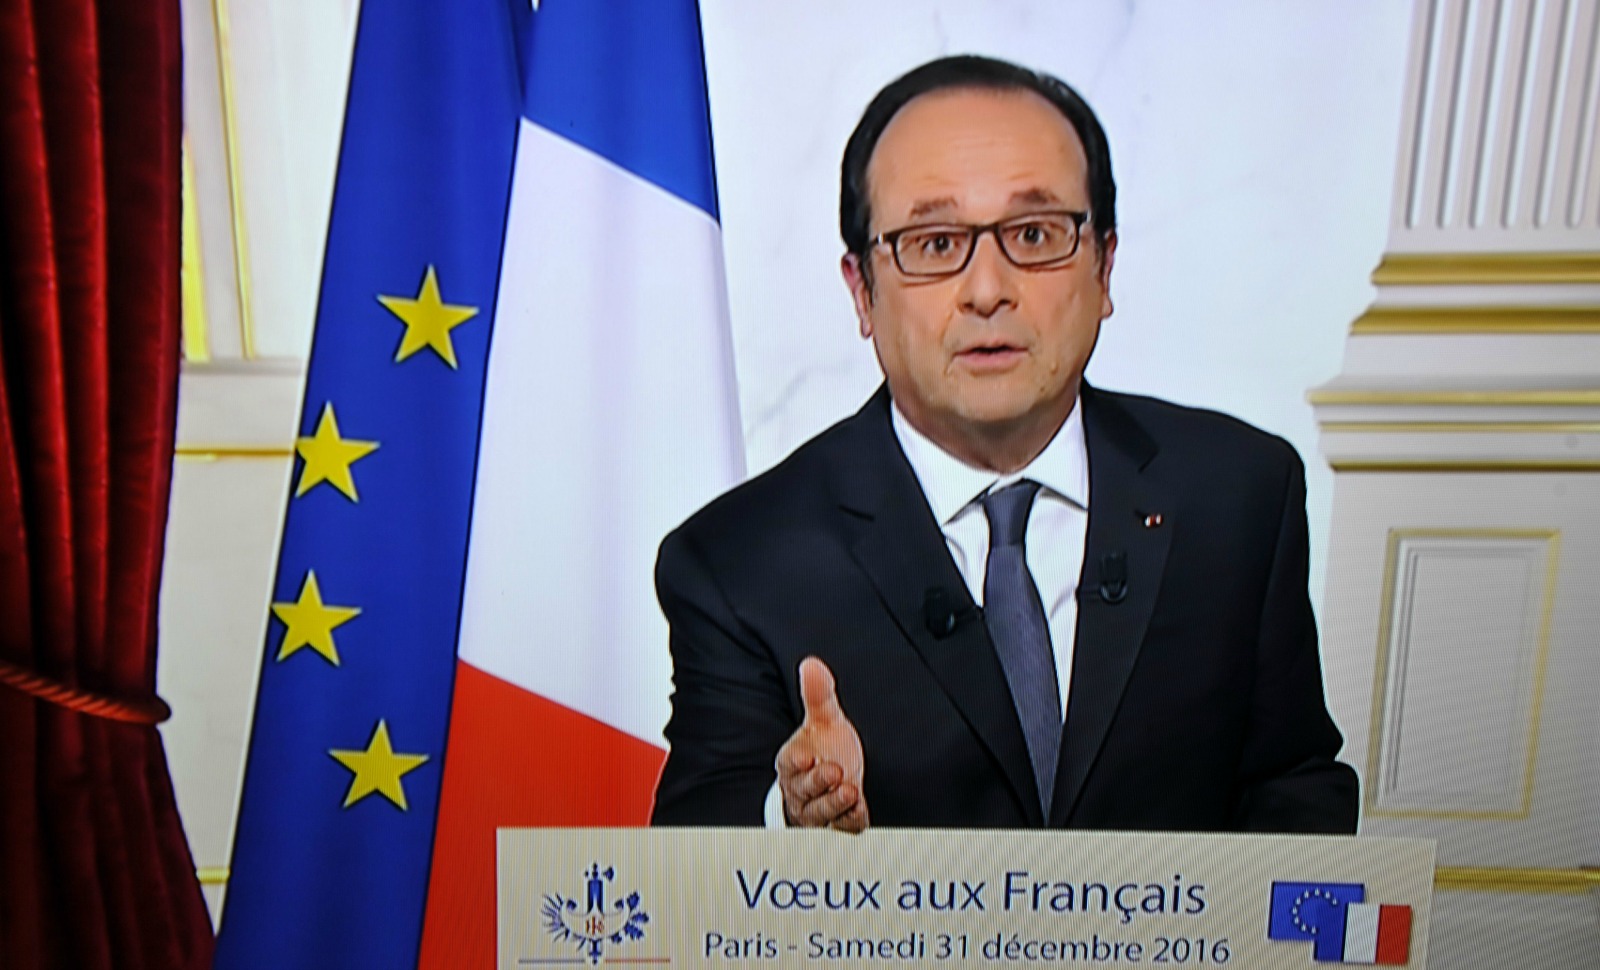 Exclusif: le brouillon des derniers vœux de François Hollande!